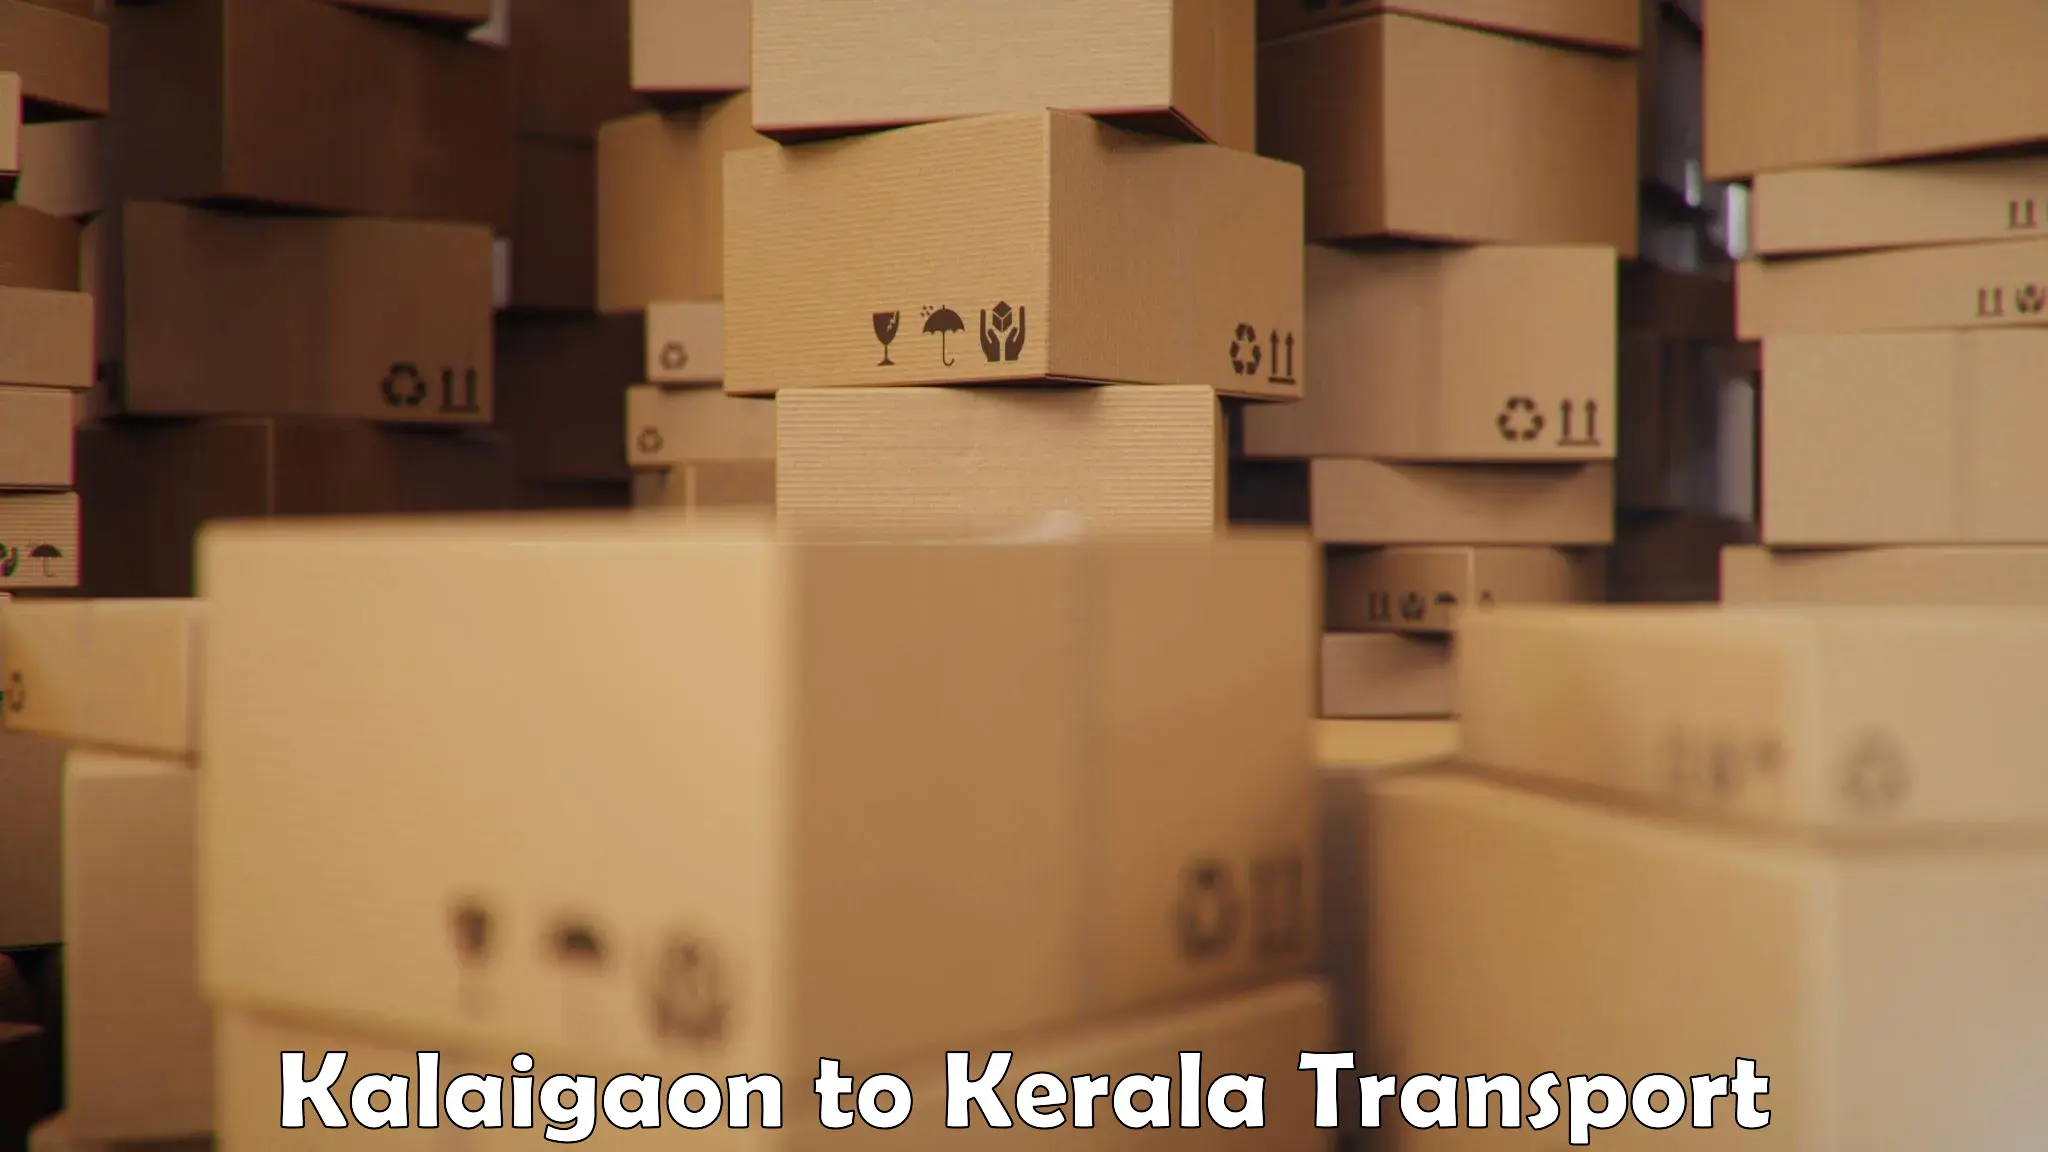 Furniture transport service Kalaigaon to Kuthiathode